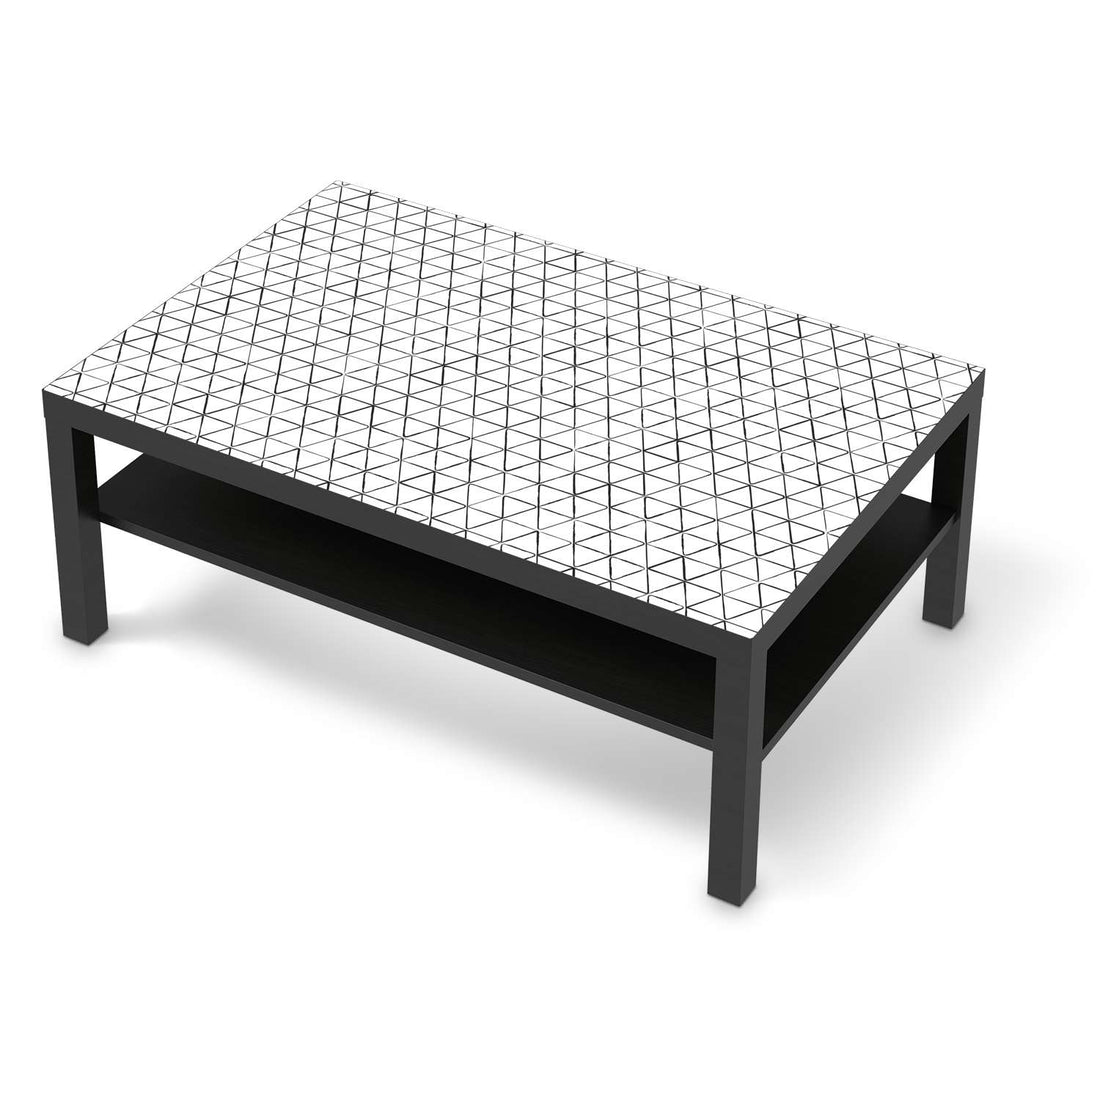 Klebefolie Mediana - IKEA Lack Tisch 118x78 cm - schwarz